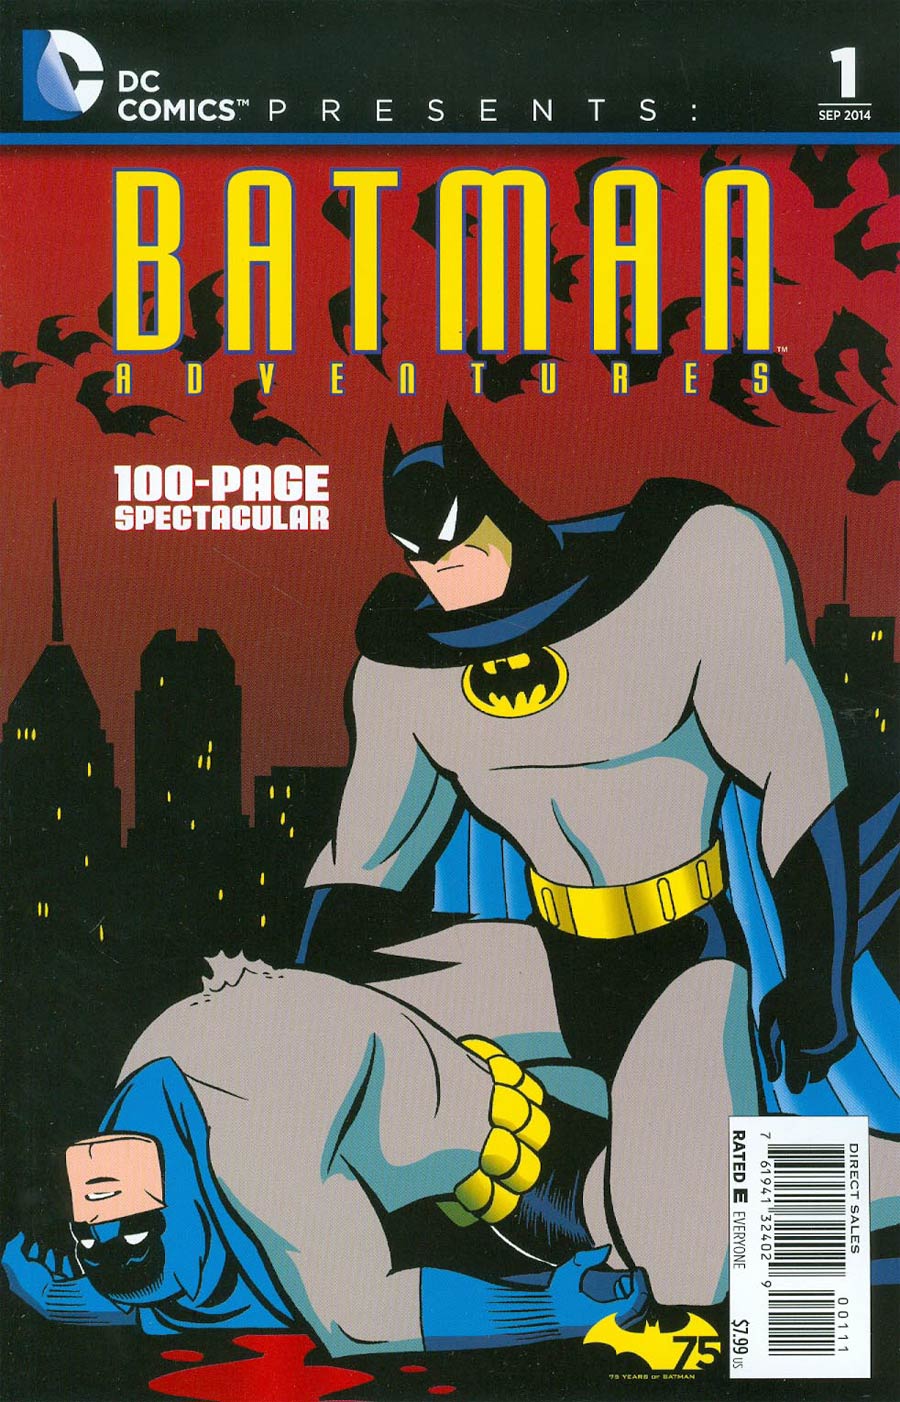 DC Comics Presents Batman Adventures #1